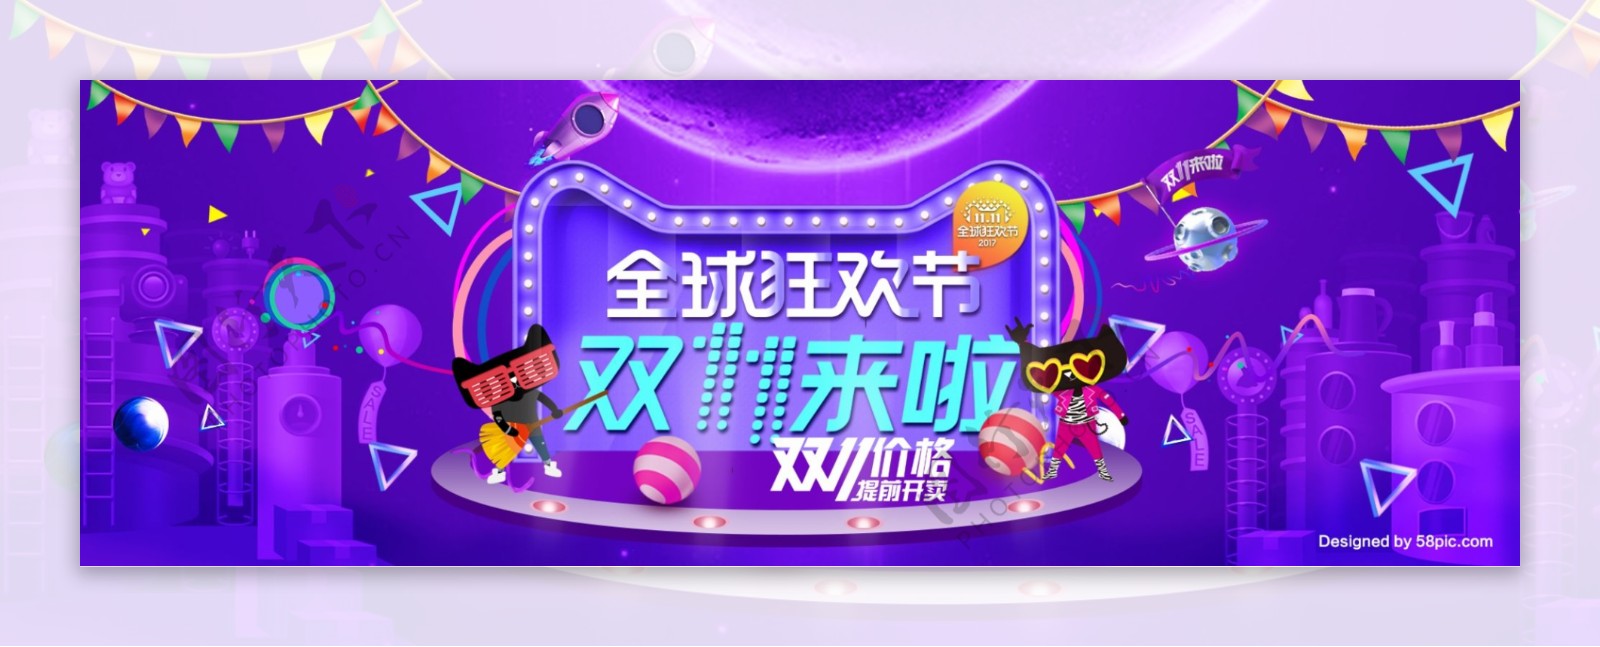 紫色炫酷2017双11淘宝电商海报模板双十一banner